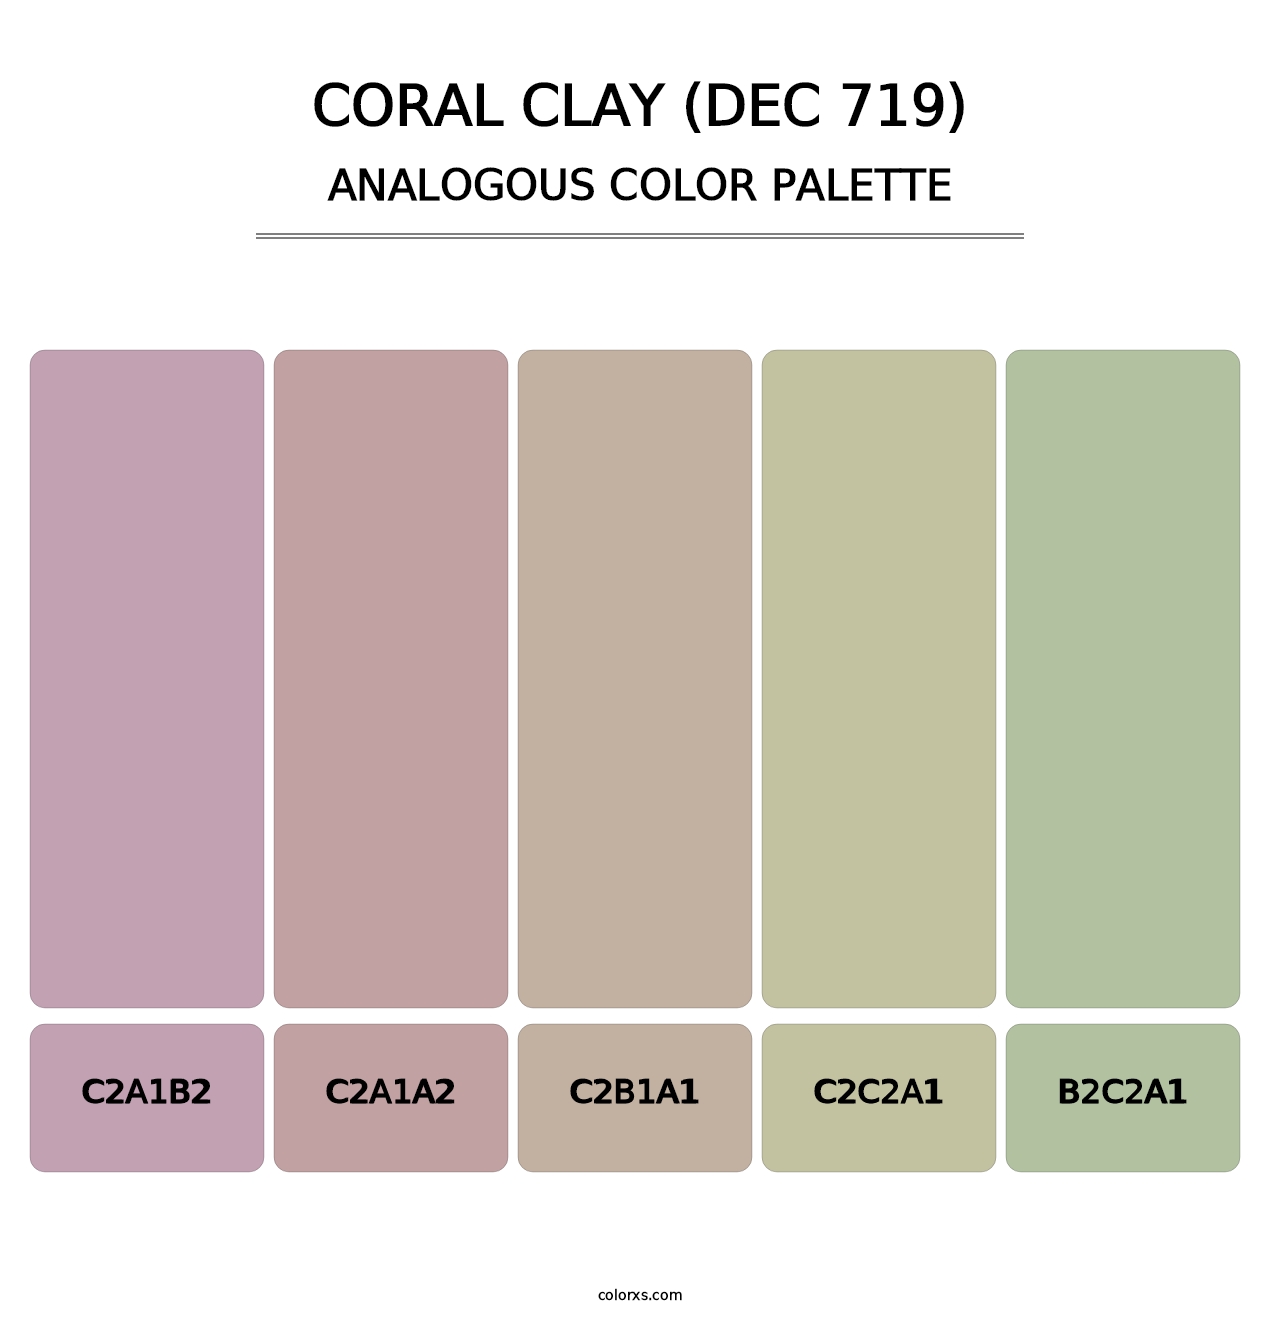 Coral Clay (DEC 719) - Analogous Color Palette